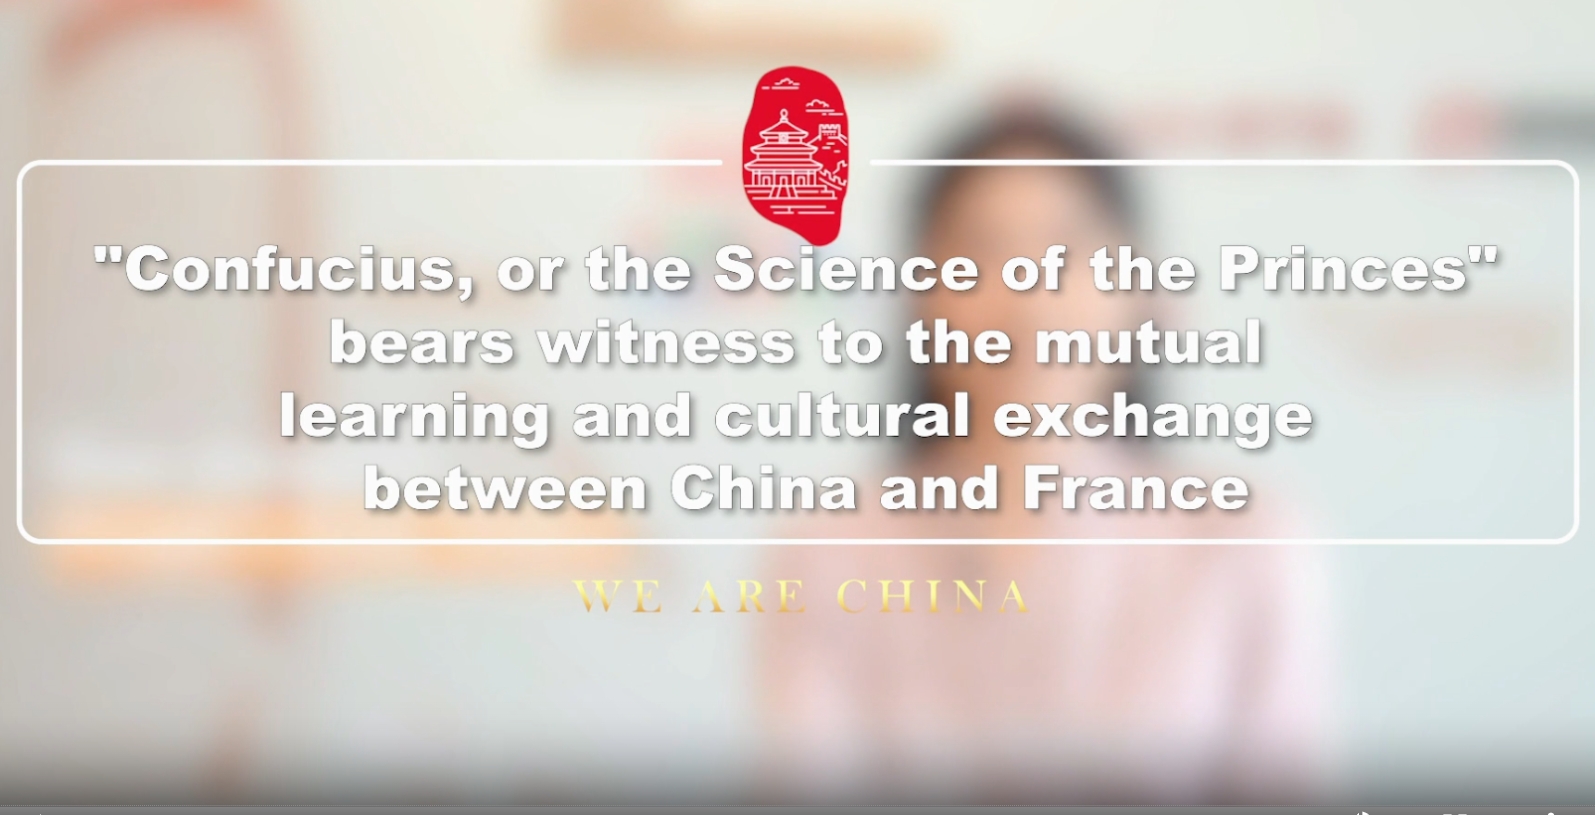  Die Analekten Konfuzius als Zeugnis des Austauschs und des gegenseitigen Verständnisses zwischen der chinesischen und französischen Kultur